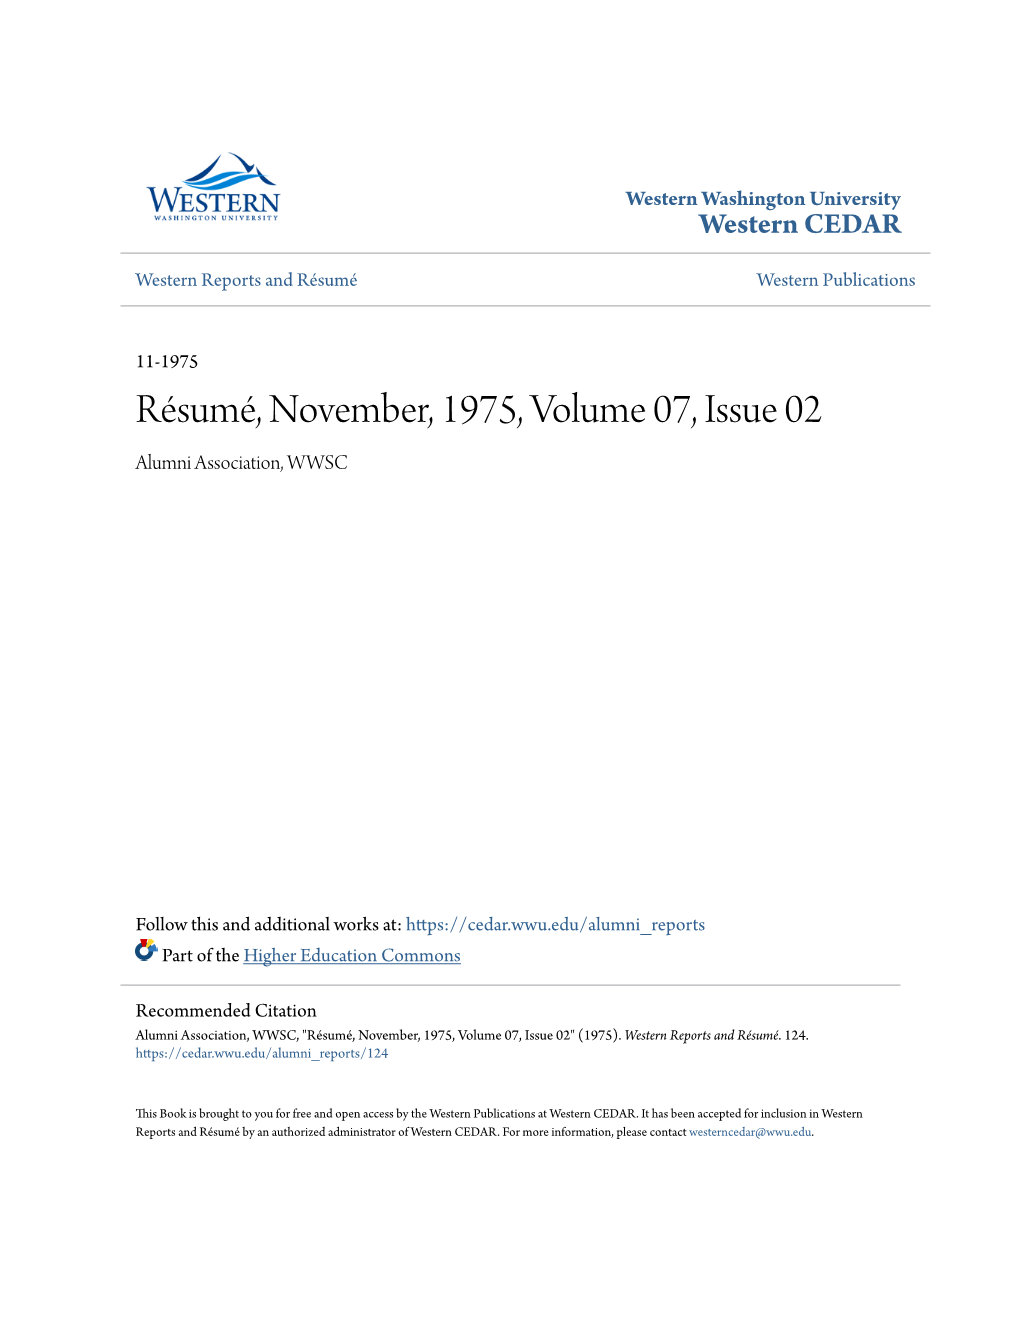 Résumé, November, 1975, Volume 07, Issue 02 Alumni Association, WWSC